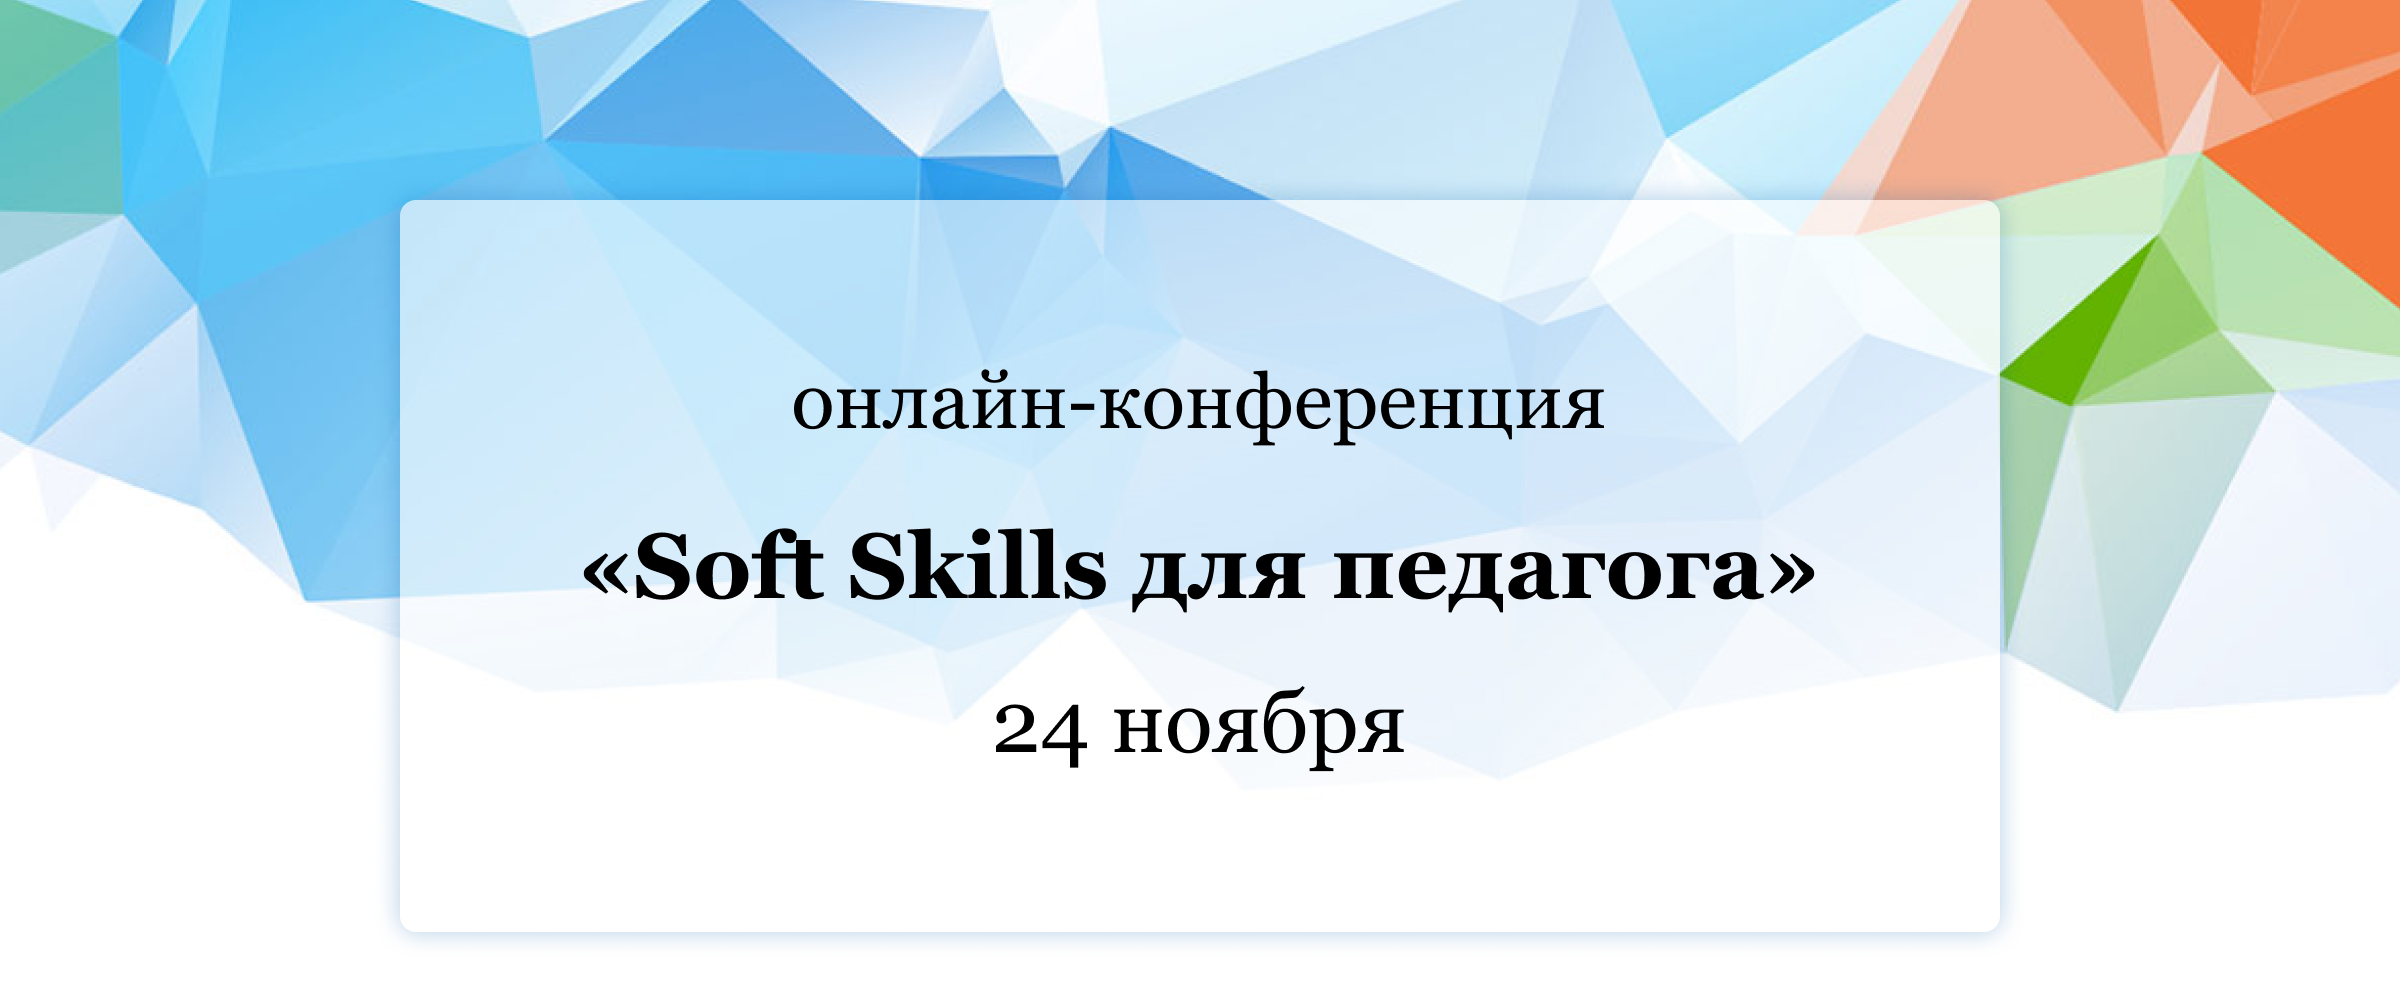 24 ноября 13:00-18:00 (мск) Участие бесплатное Онлайн-конференция «Soft Skills для педагога»